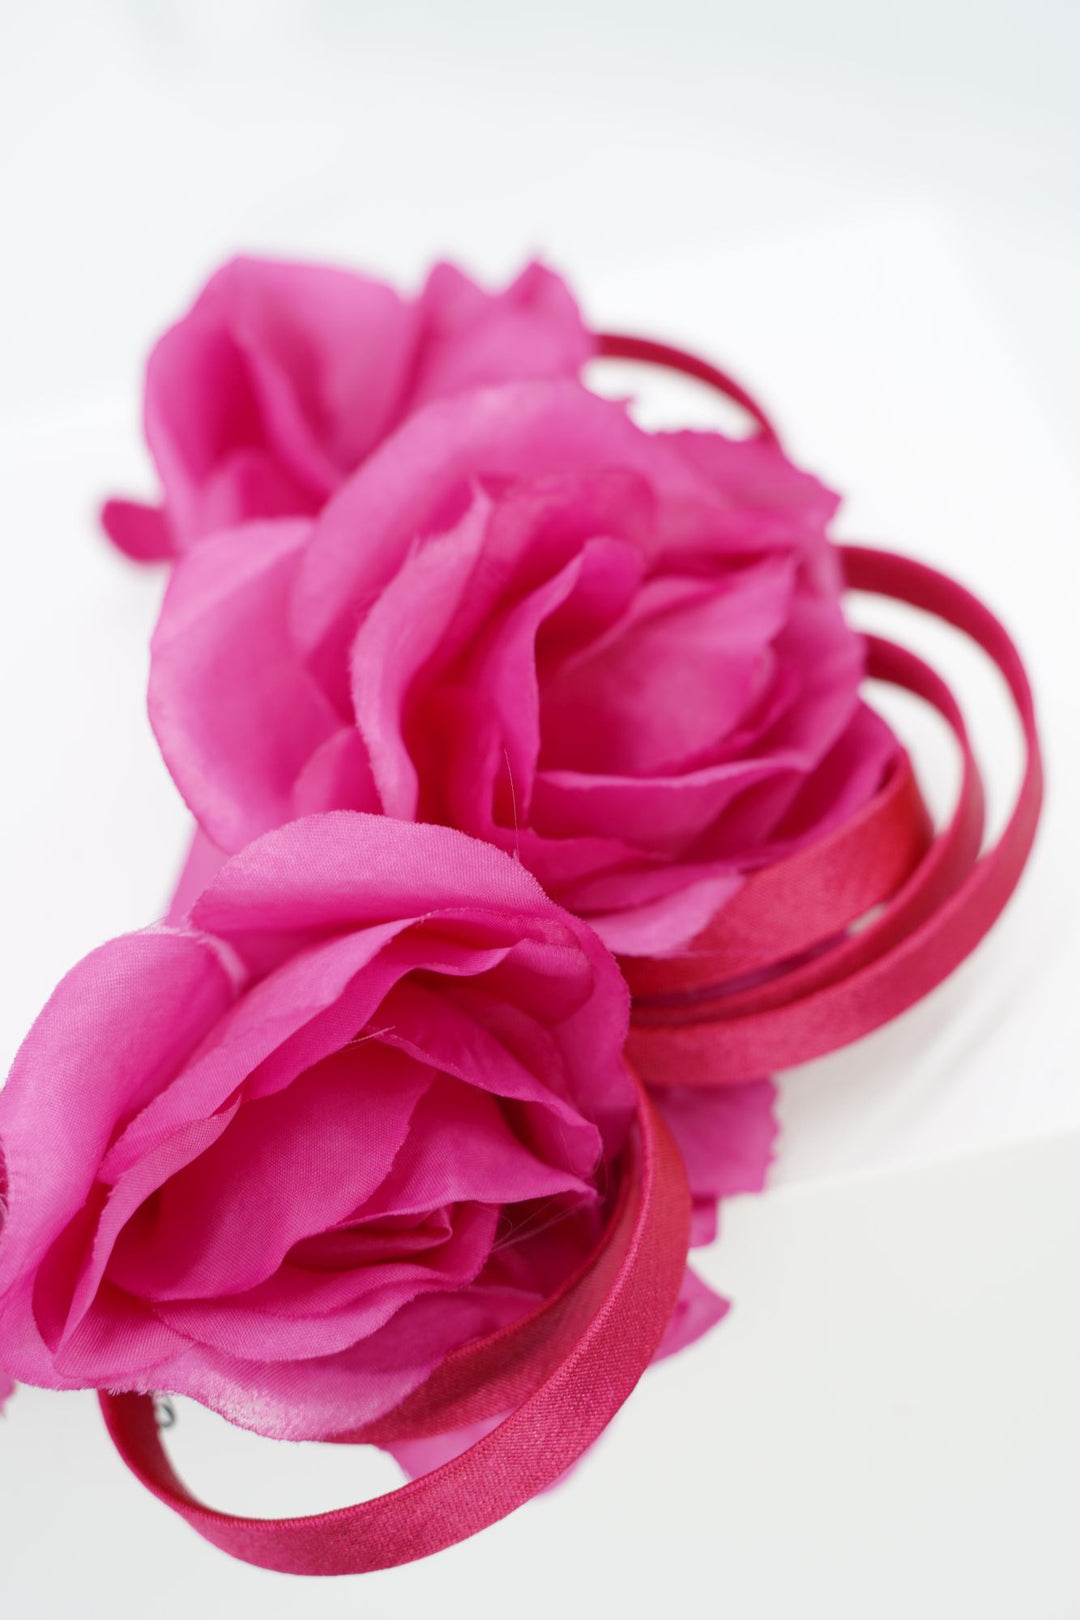 Fascinator "flowerpower" pink